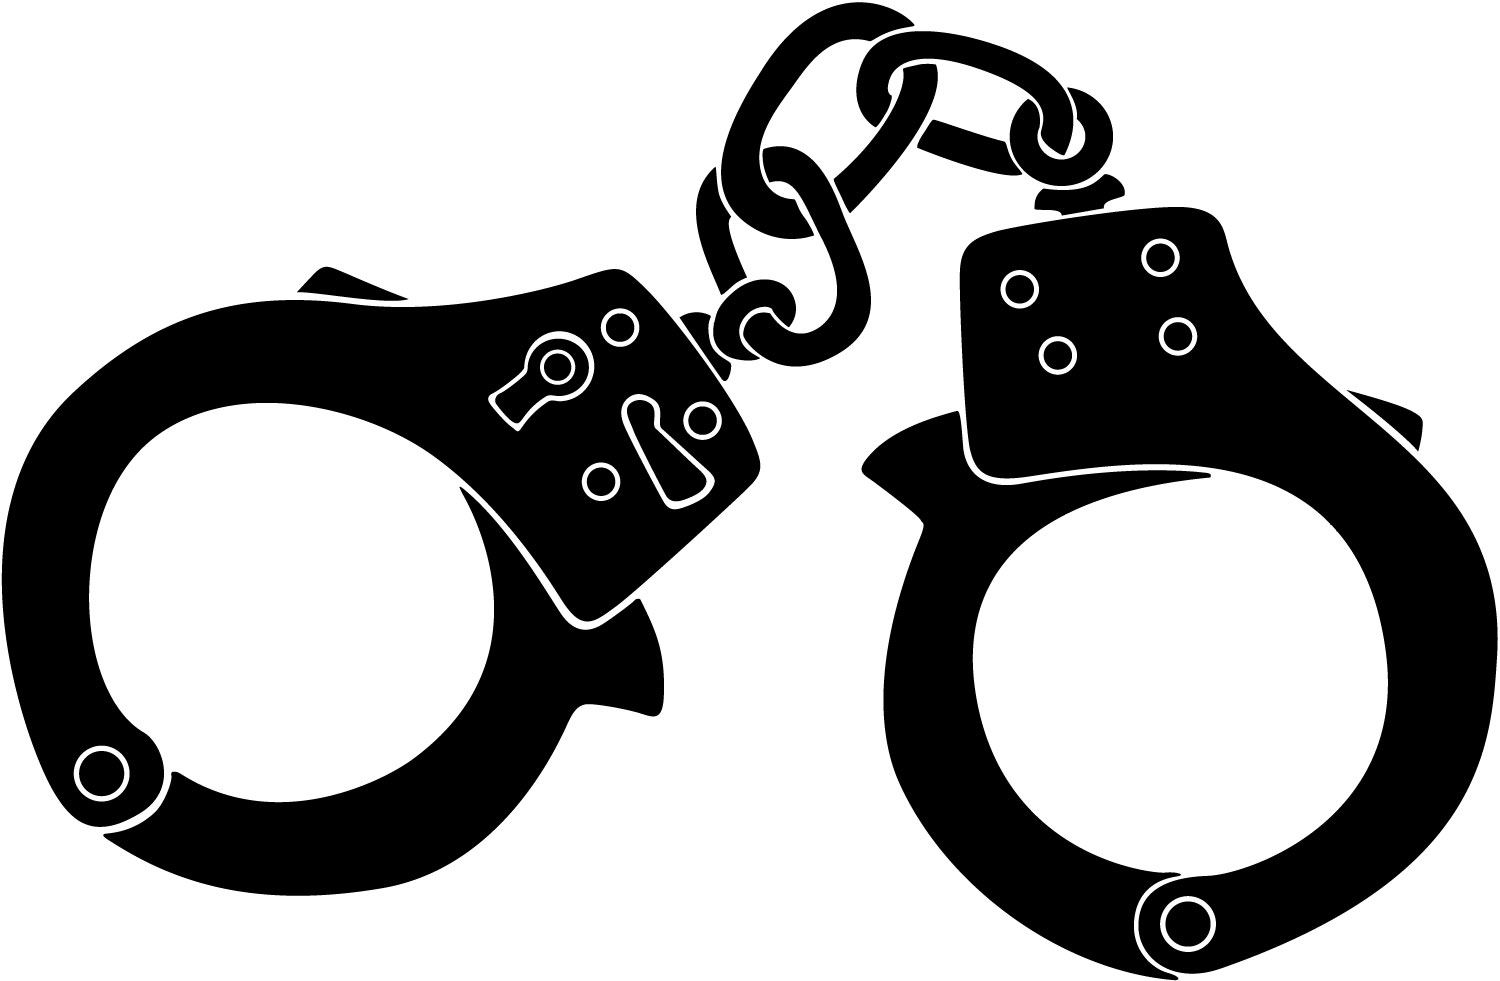 Handcuffs clip art